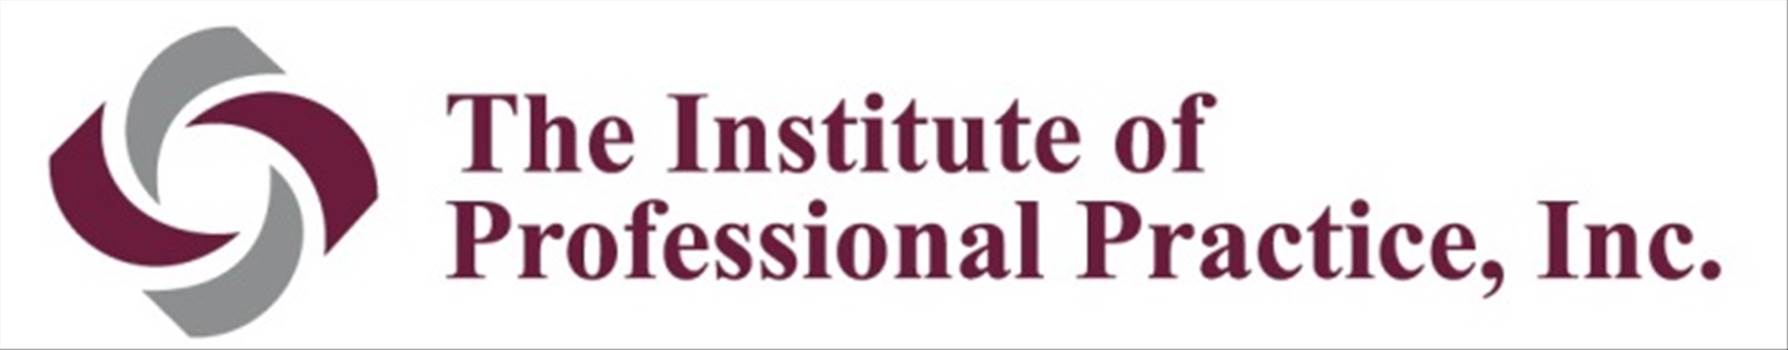 IPPI Logo (small).jpg - 